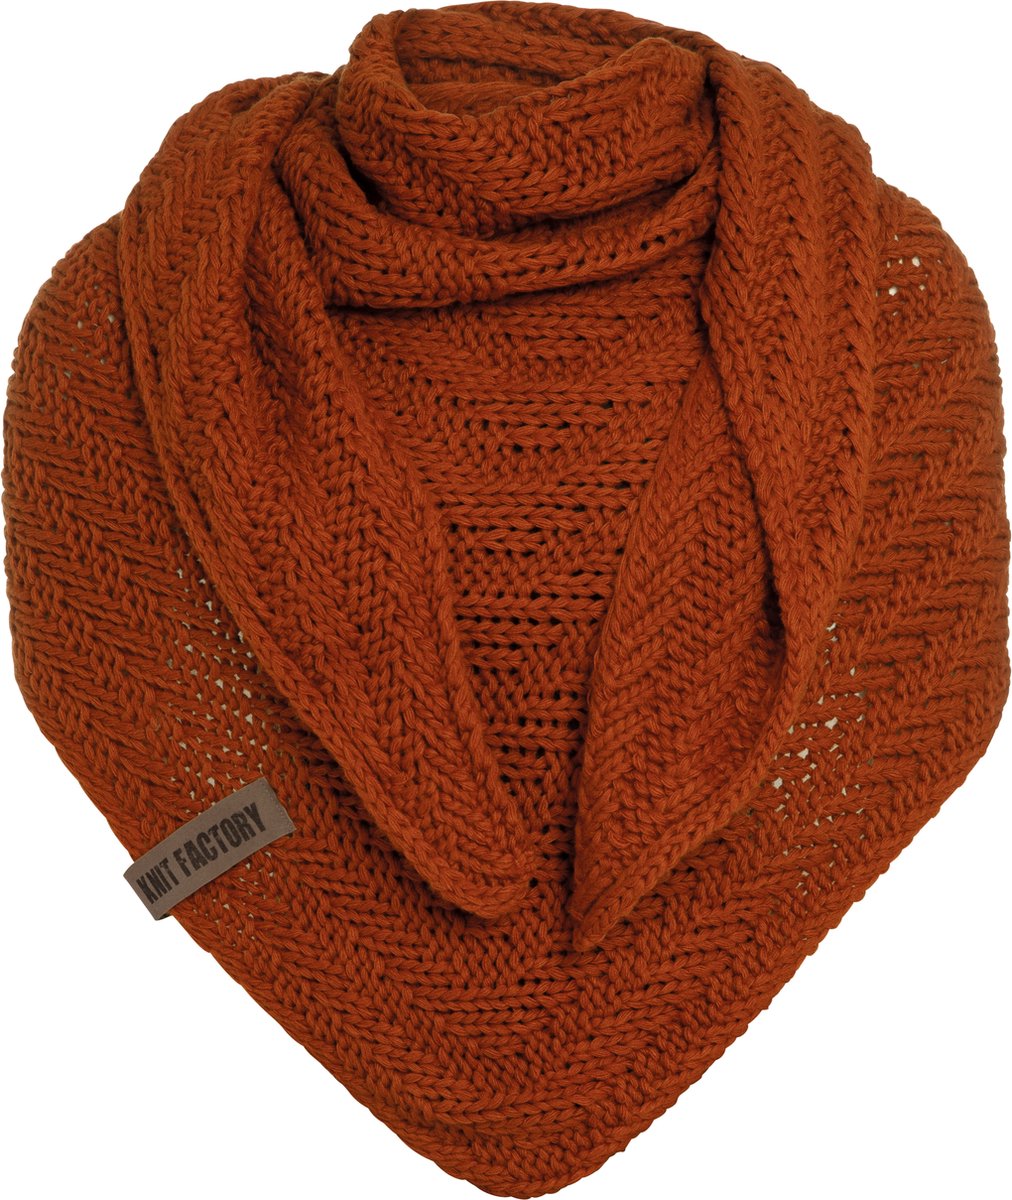 Knit Factory Sally Gebreide Omslagdoek - Driehoek Sjaal Dames - Dames sjaal - Wintersjaal - Stola - Wollen sjaal - Oranje sjaal - Terra - 220x85 cm - Grof gebreid